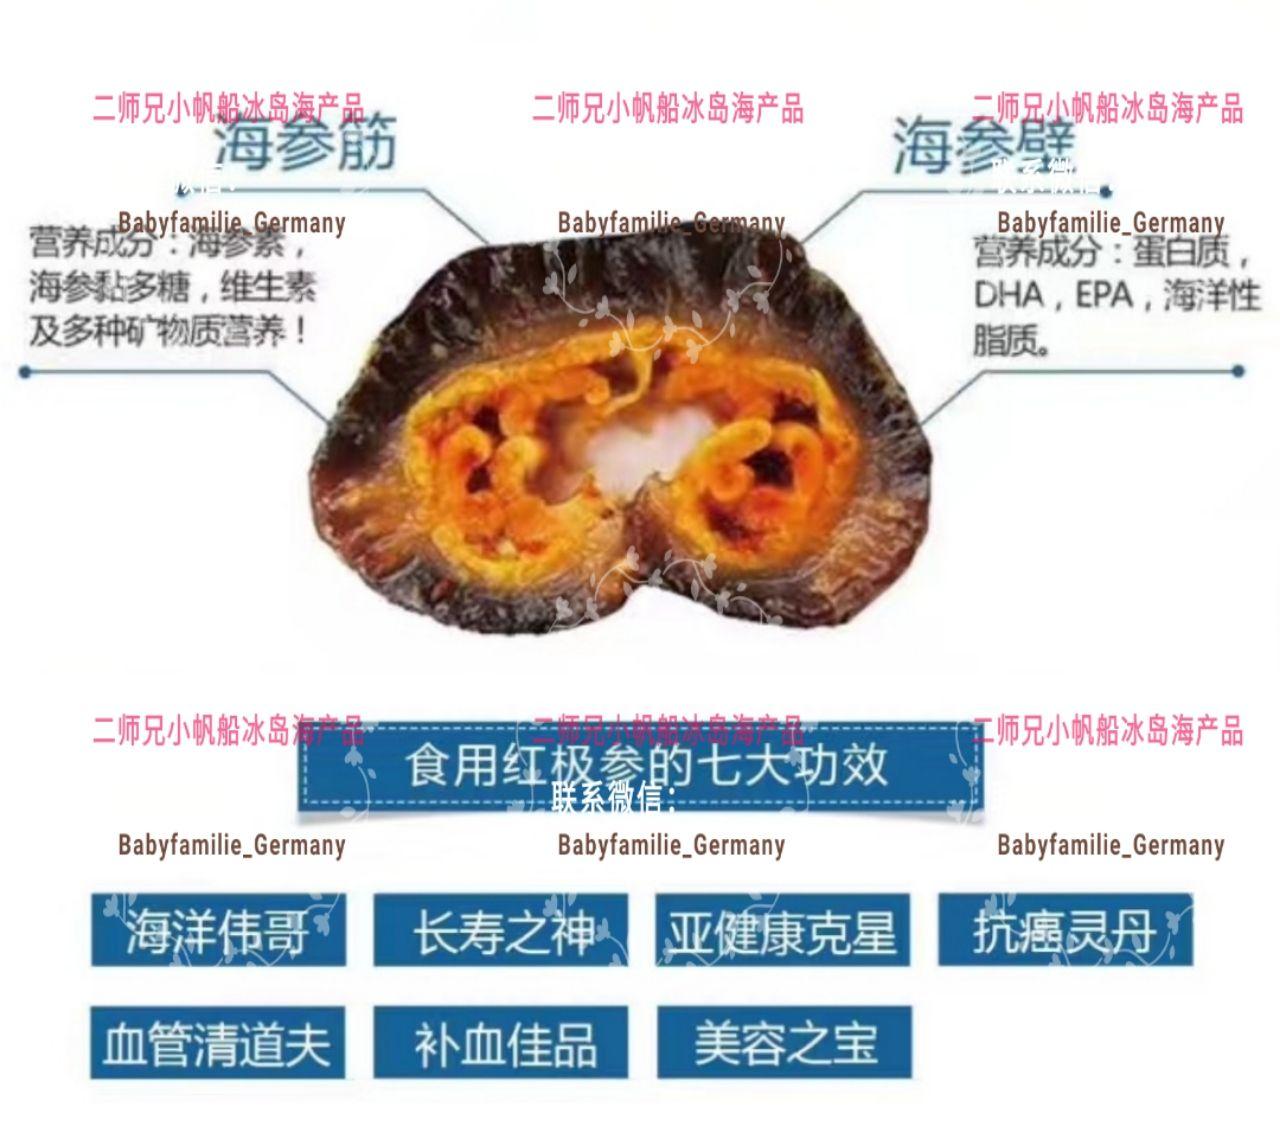 海参的结构图图片